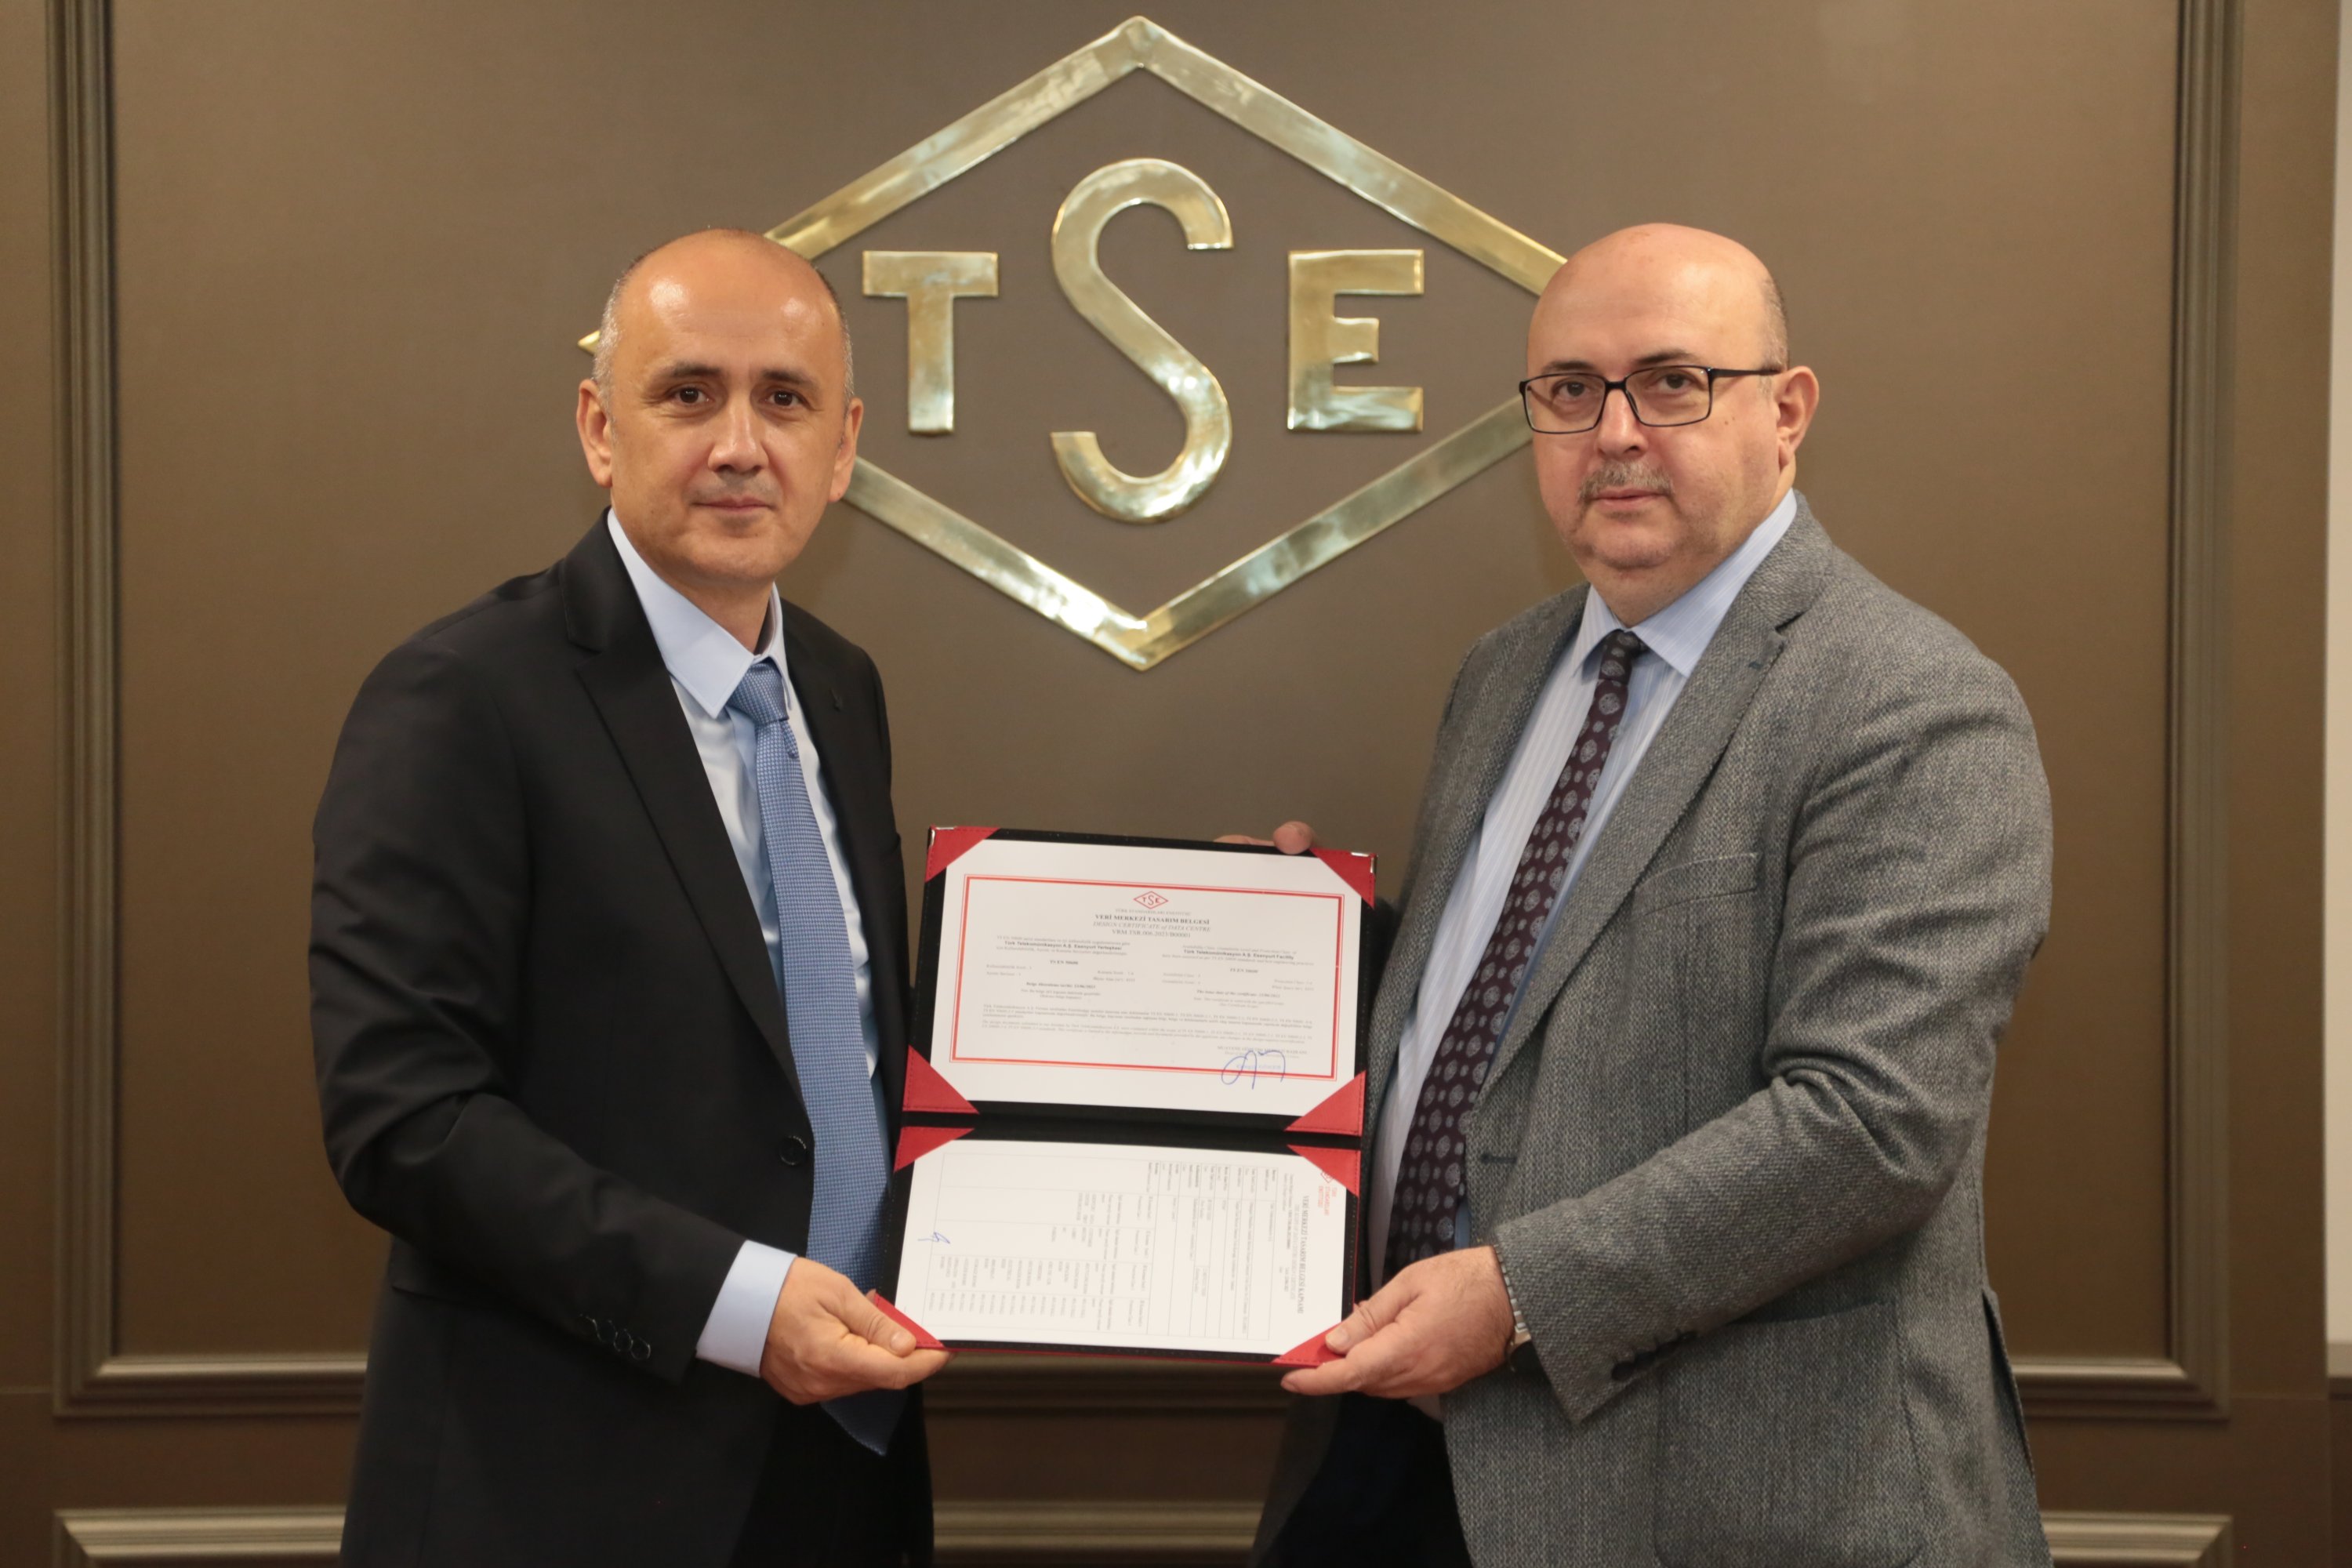 Durmuş Ali Taşkın (R), deputy general manager of Türk Telekom, is handed the TS EN 50600 Design Certificate for the company's Esenyurt Data Center. (Courtesy of Türk Telekom)